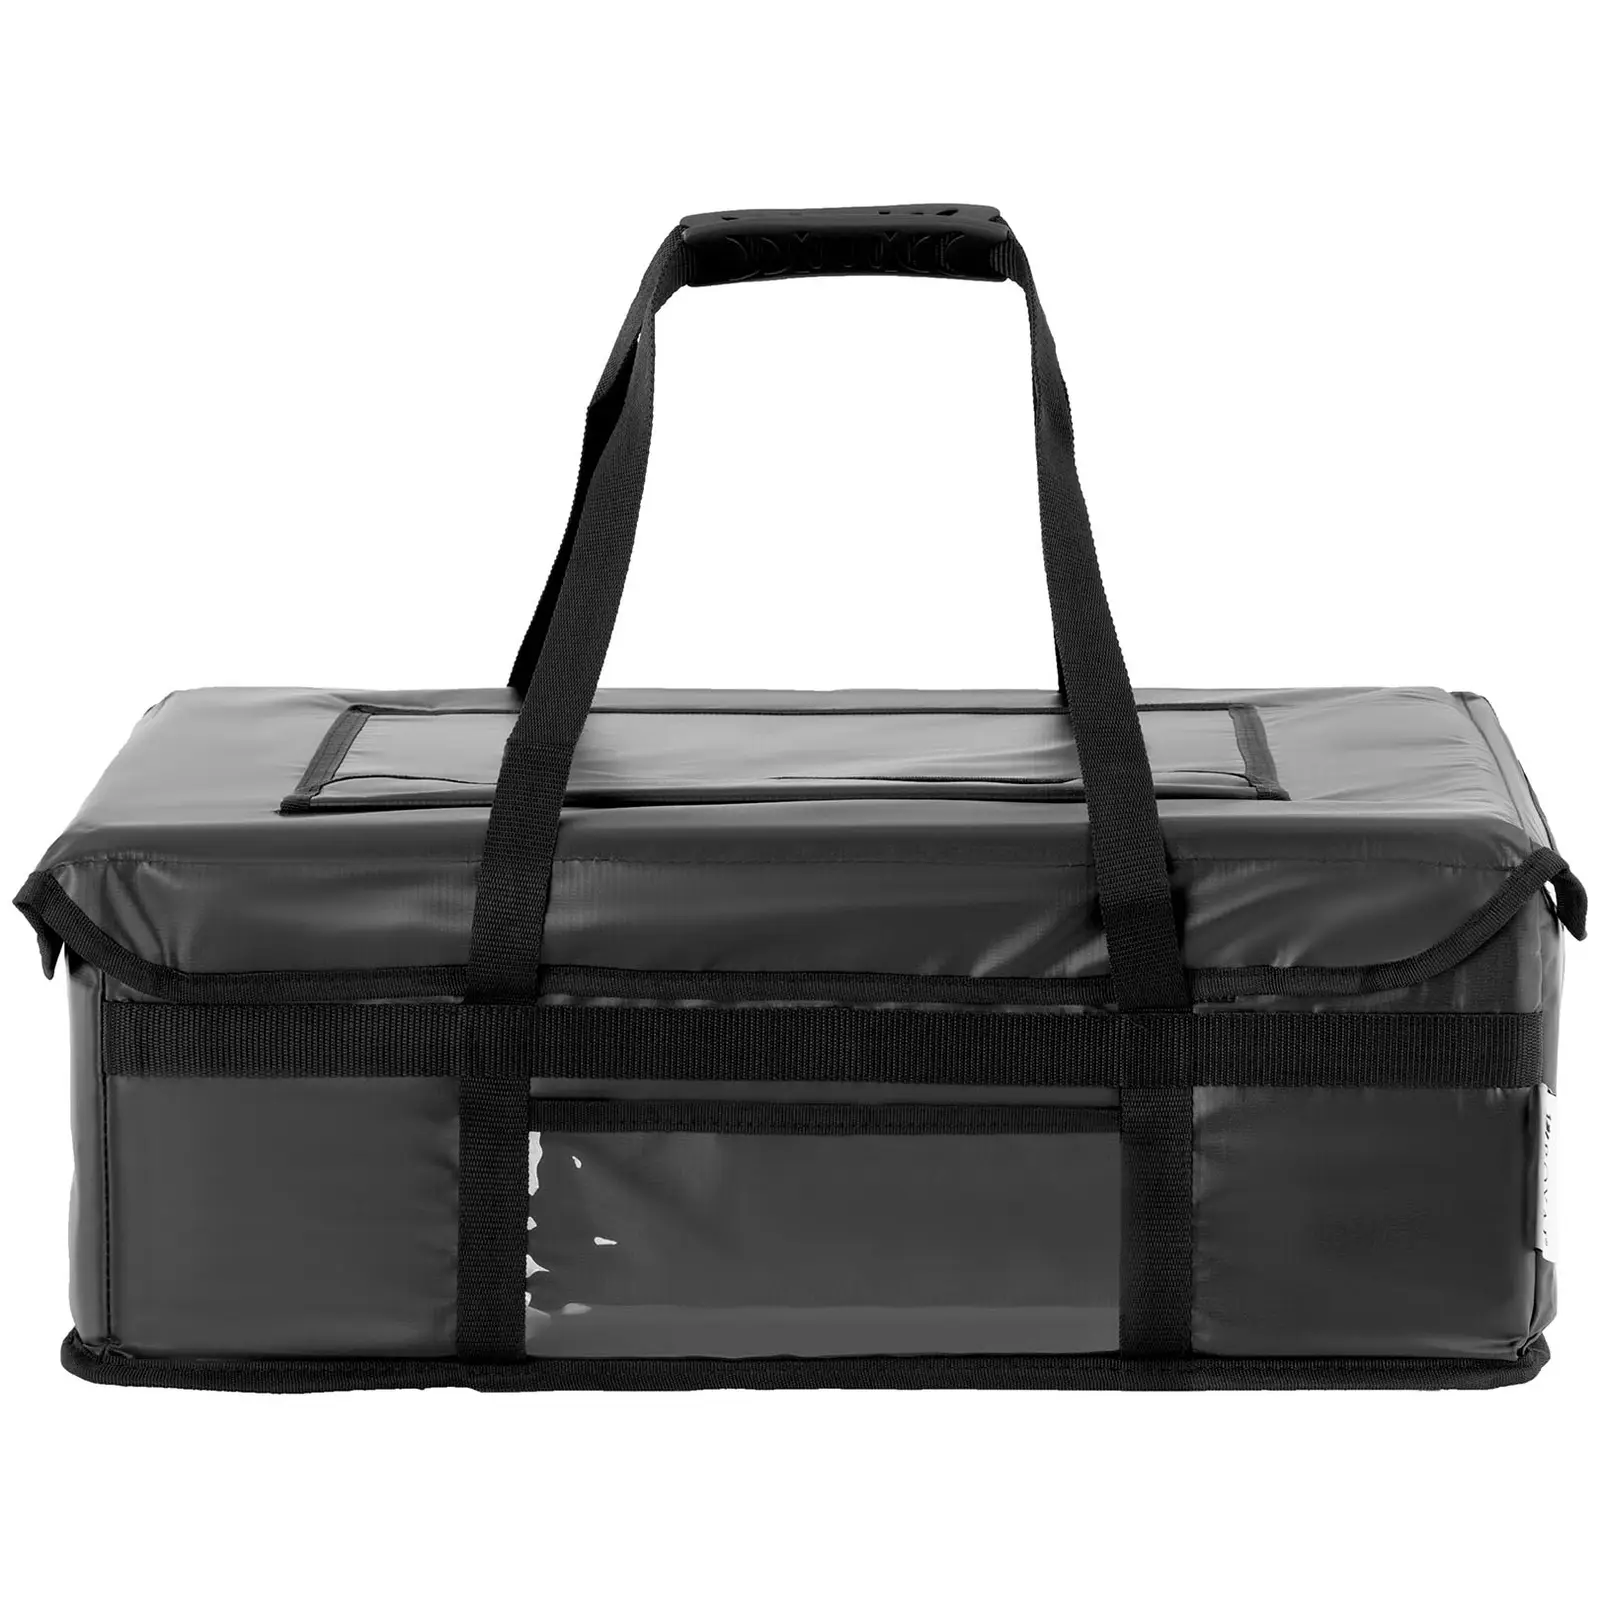 Delivery Bag - 50 x 40 x 16 cm - 36 l - Black - Toploader - Royal Catering